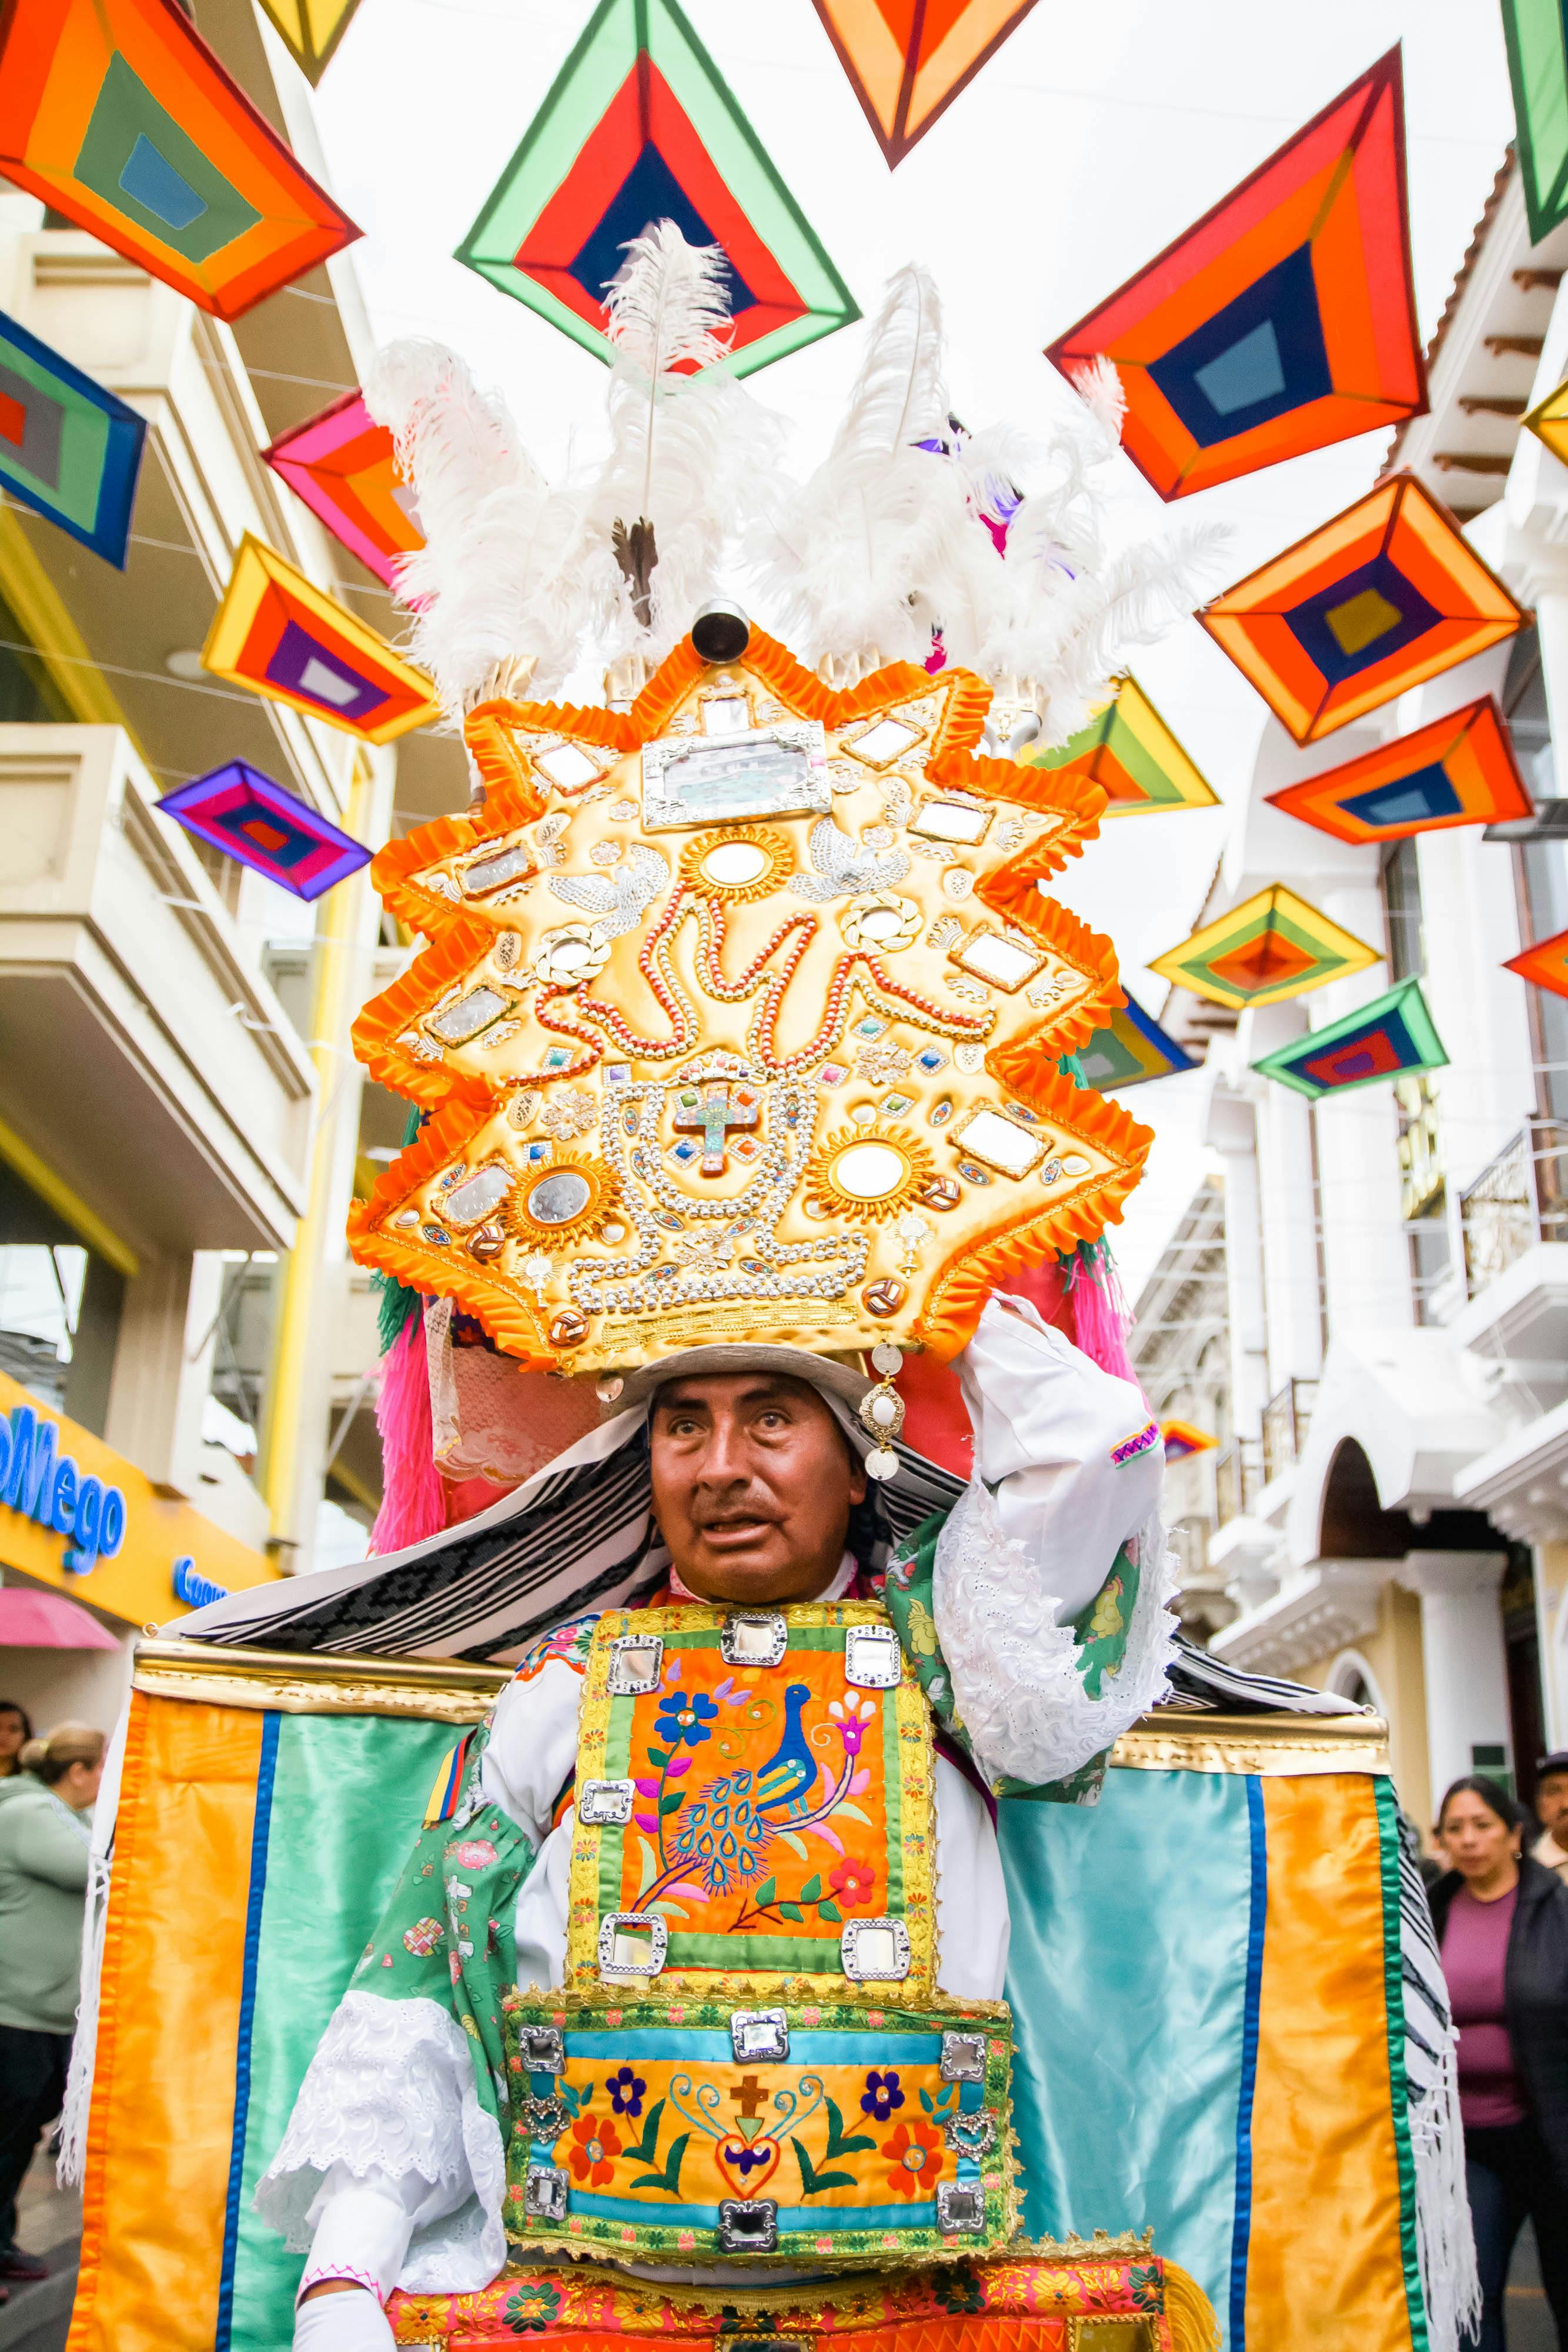 Kuinka hyvin tunnet Ecuadorin kulttuurin ja perinteet? Tee quizimme nyt!